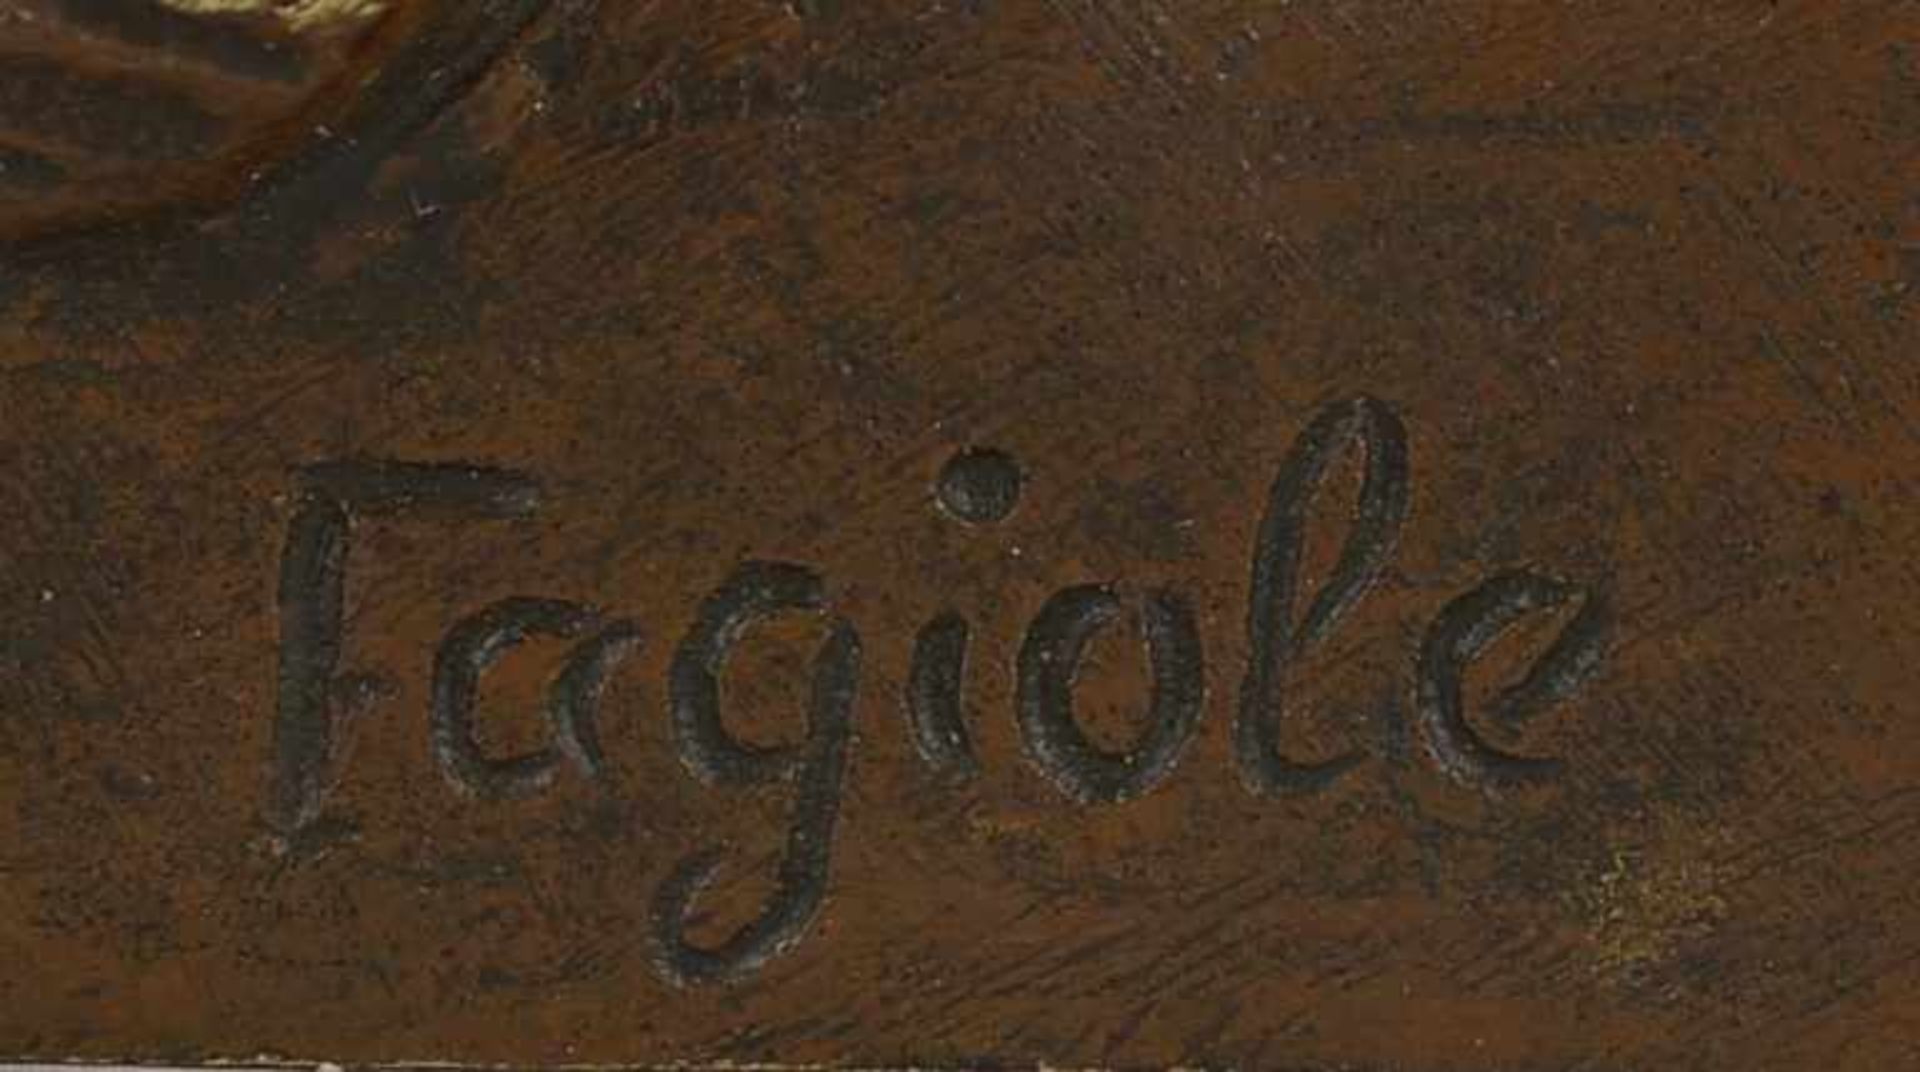 Bronzeskulptur, 'Der kleine Musikant', verso signiert 'Fagiole'; Höhe 27,3 cm - Bild 2 aus 2